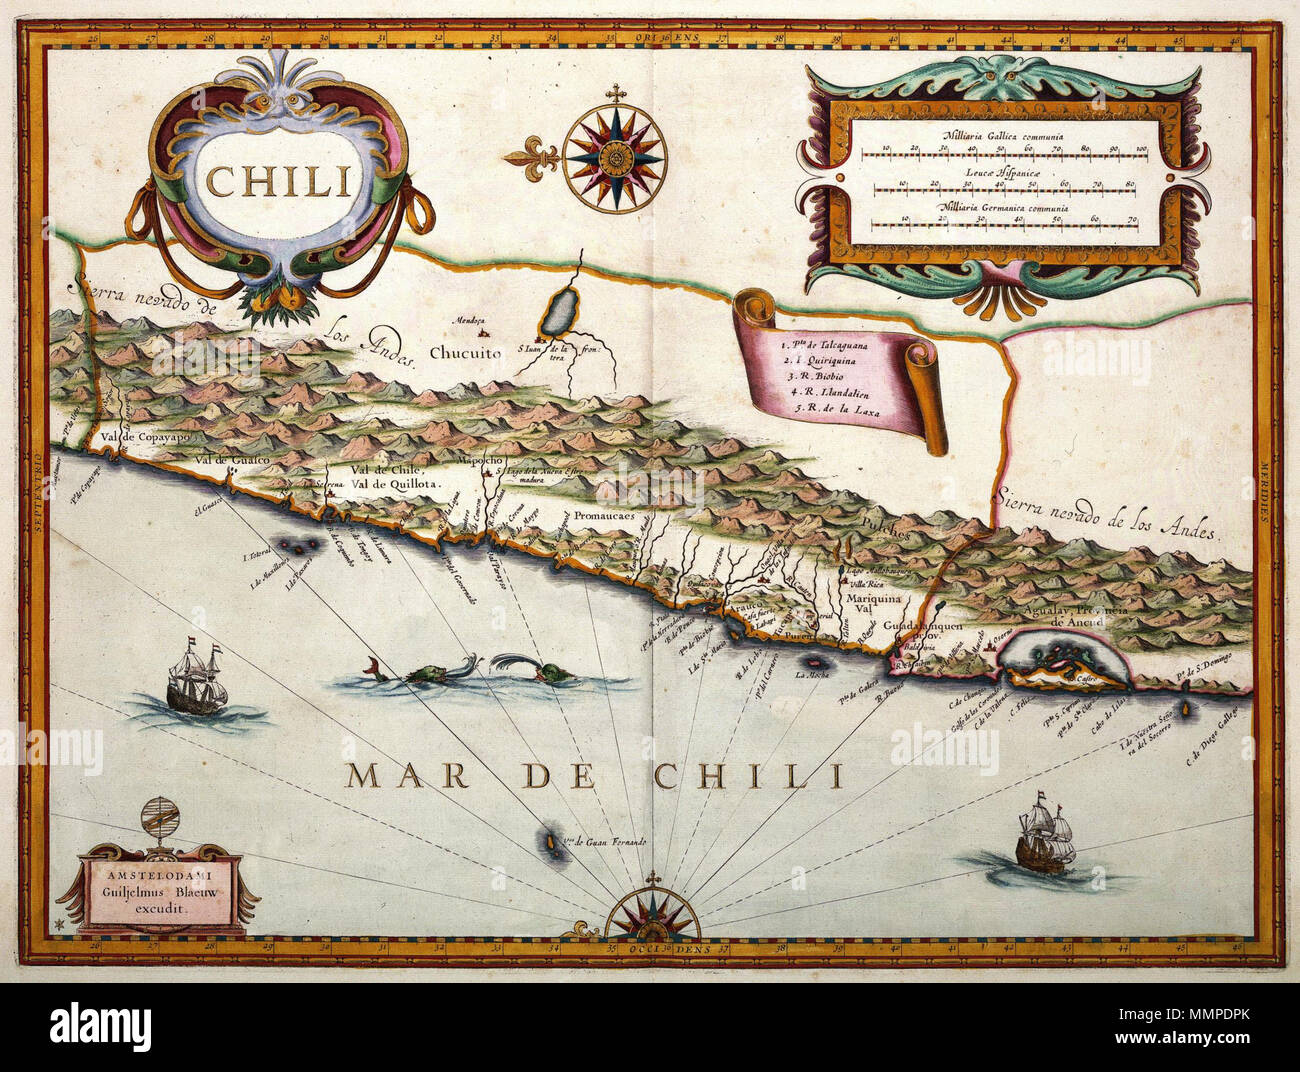 Op het randje Brullen vis Nederlands: Kaart van Chili. Chili. Willem Jansz. Blaeu (1571-1638)  publiceerde deze kaart van Chili in zijn 'Appendix atlas' uit 1630. De  gegevens voor het samenstellen van deze kaart, èn alle andere